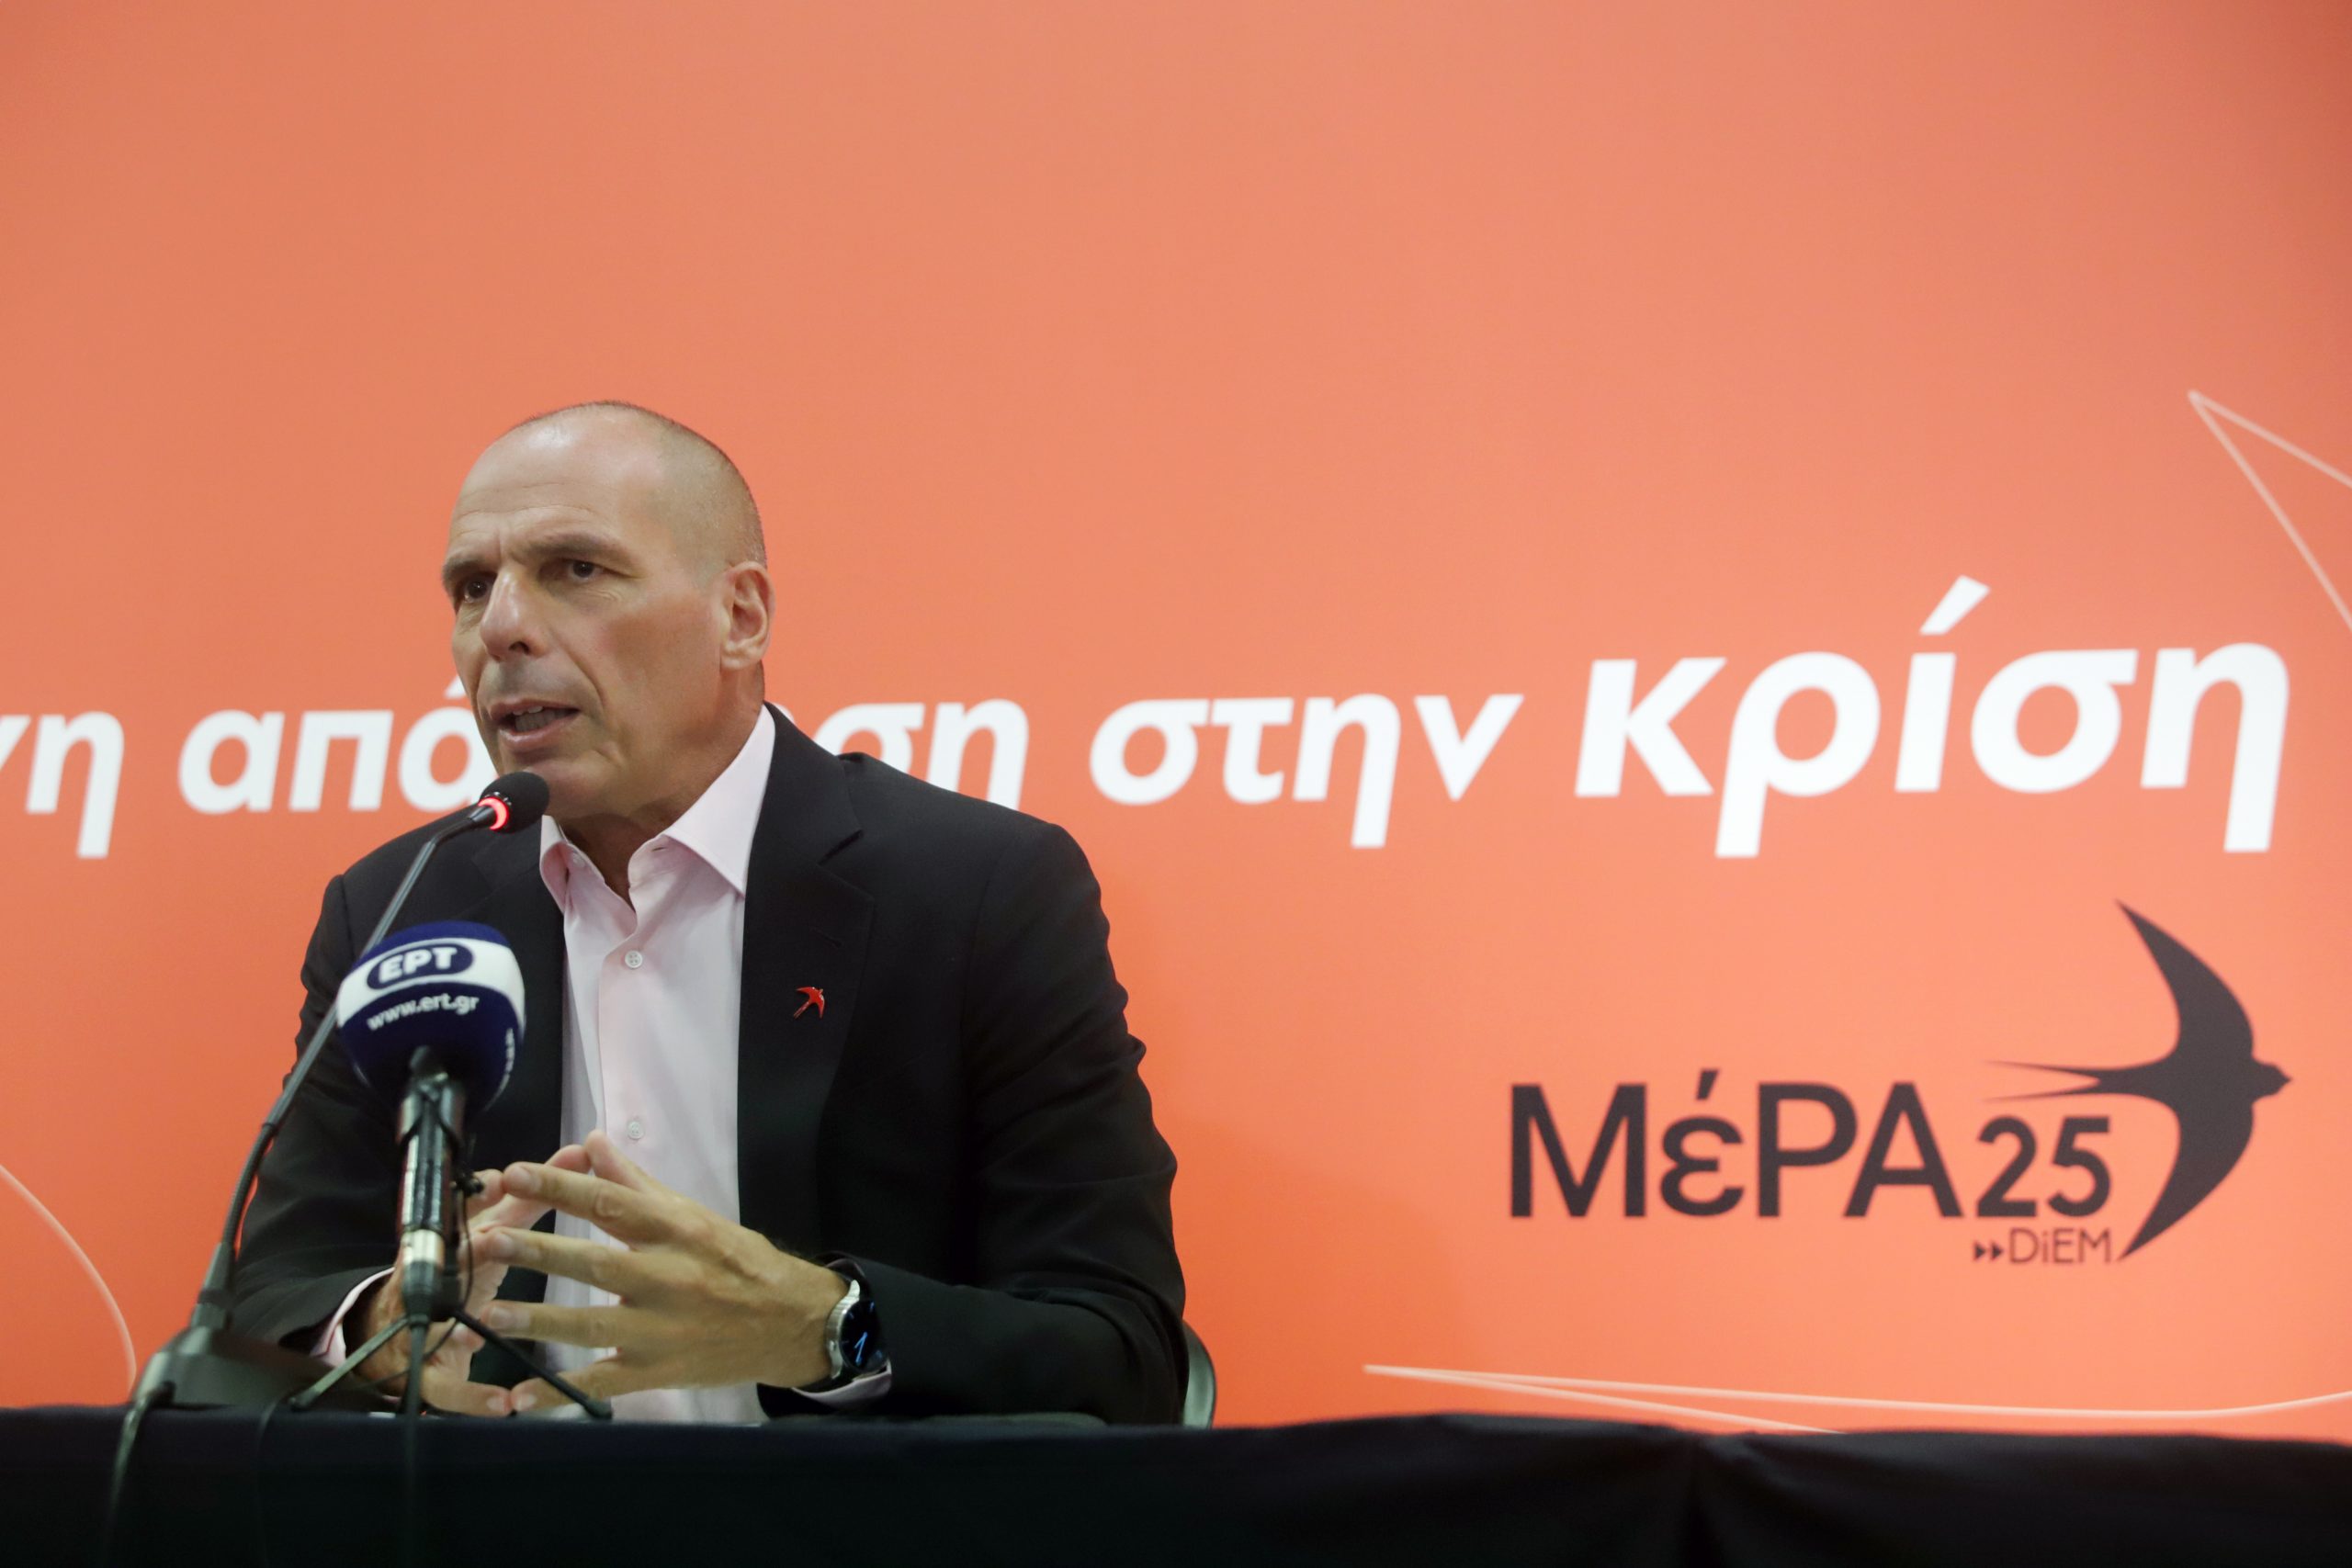 Κοινή κάθοδο για ΜέΡΑ25 και ΛΑΕ στις εθνικές εκλογές ανακοίνωσε ο Γιάνης Βαρουφάκης